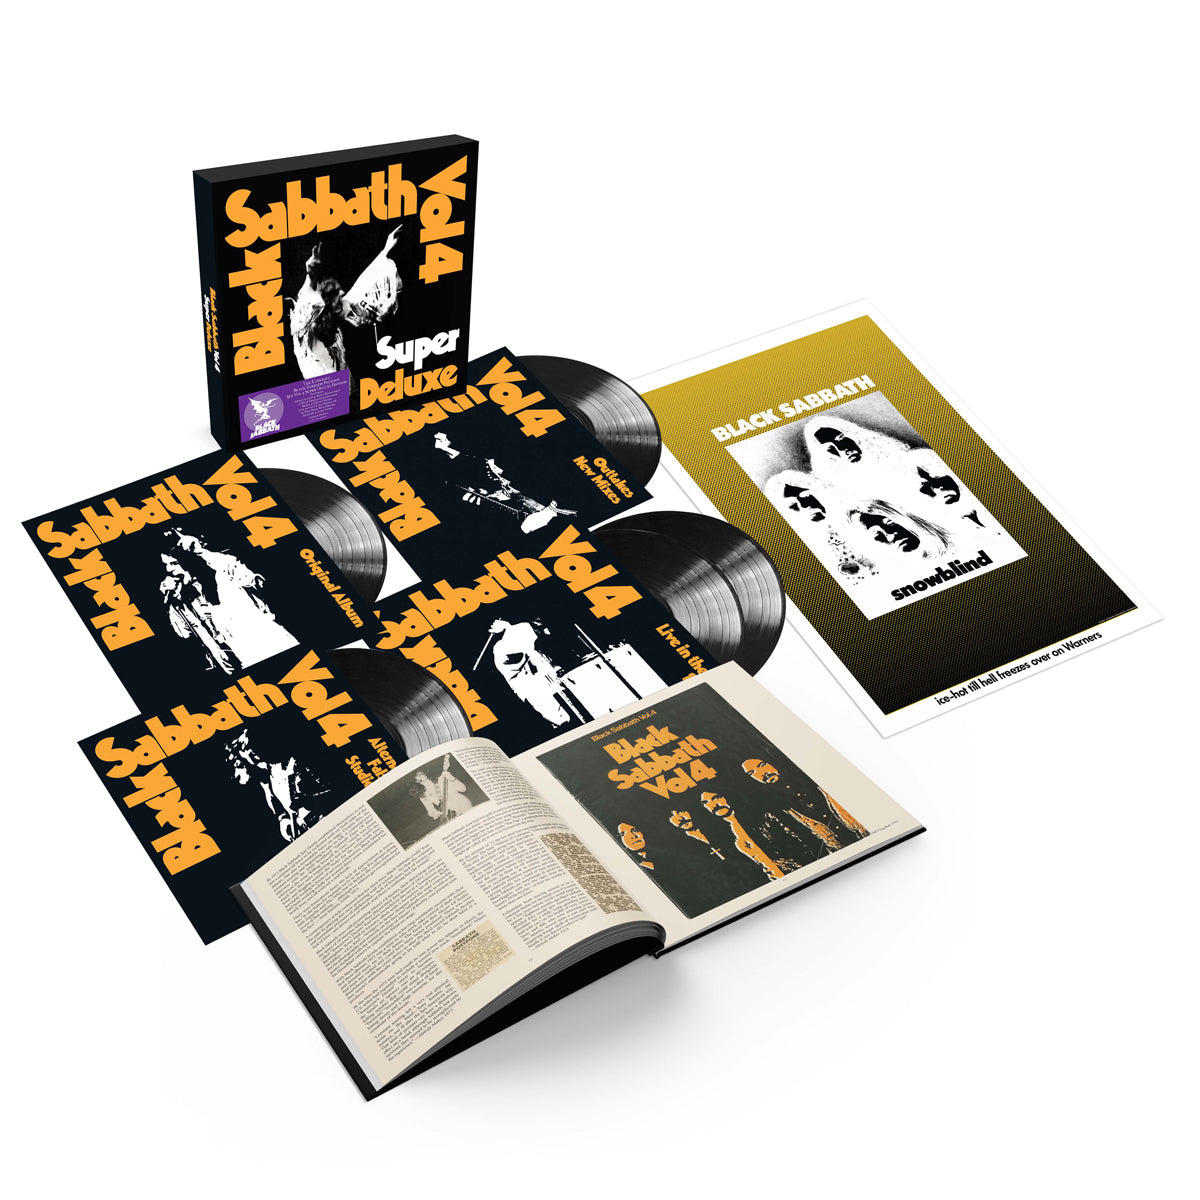 Black Sabbath - Vol. 4 Super Deluxe 5LP Vinyl Record Box Set